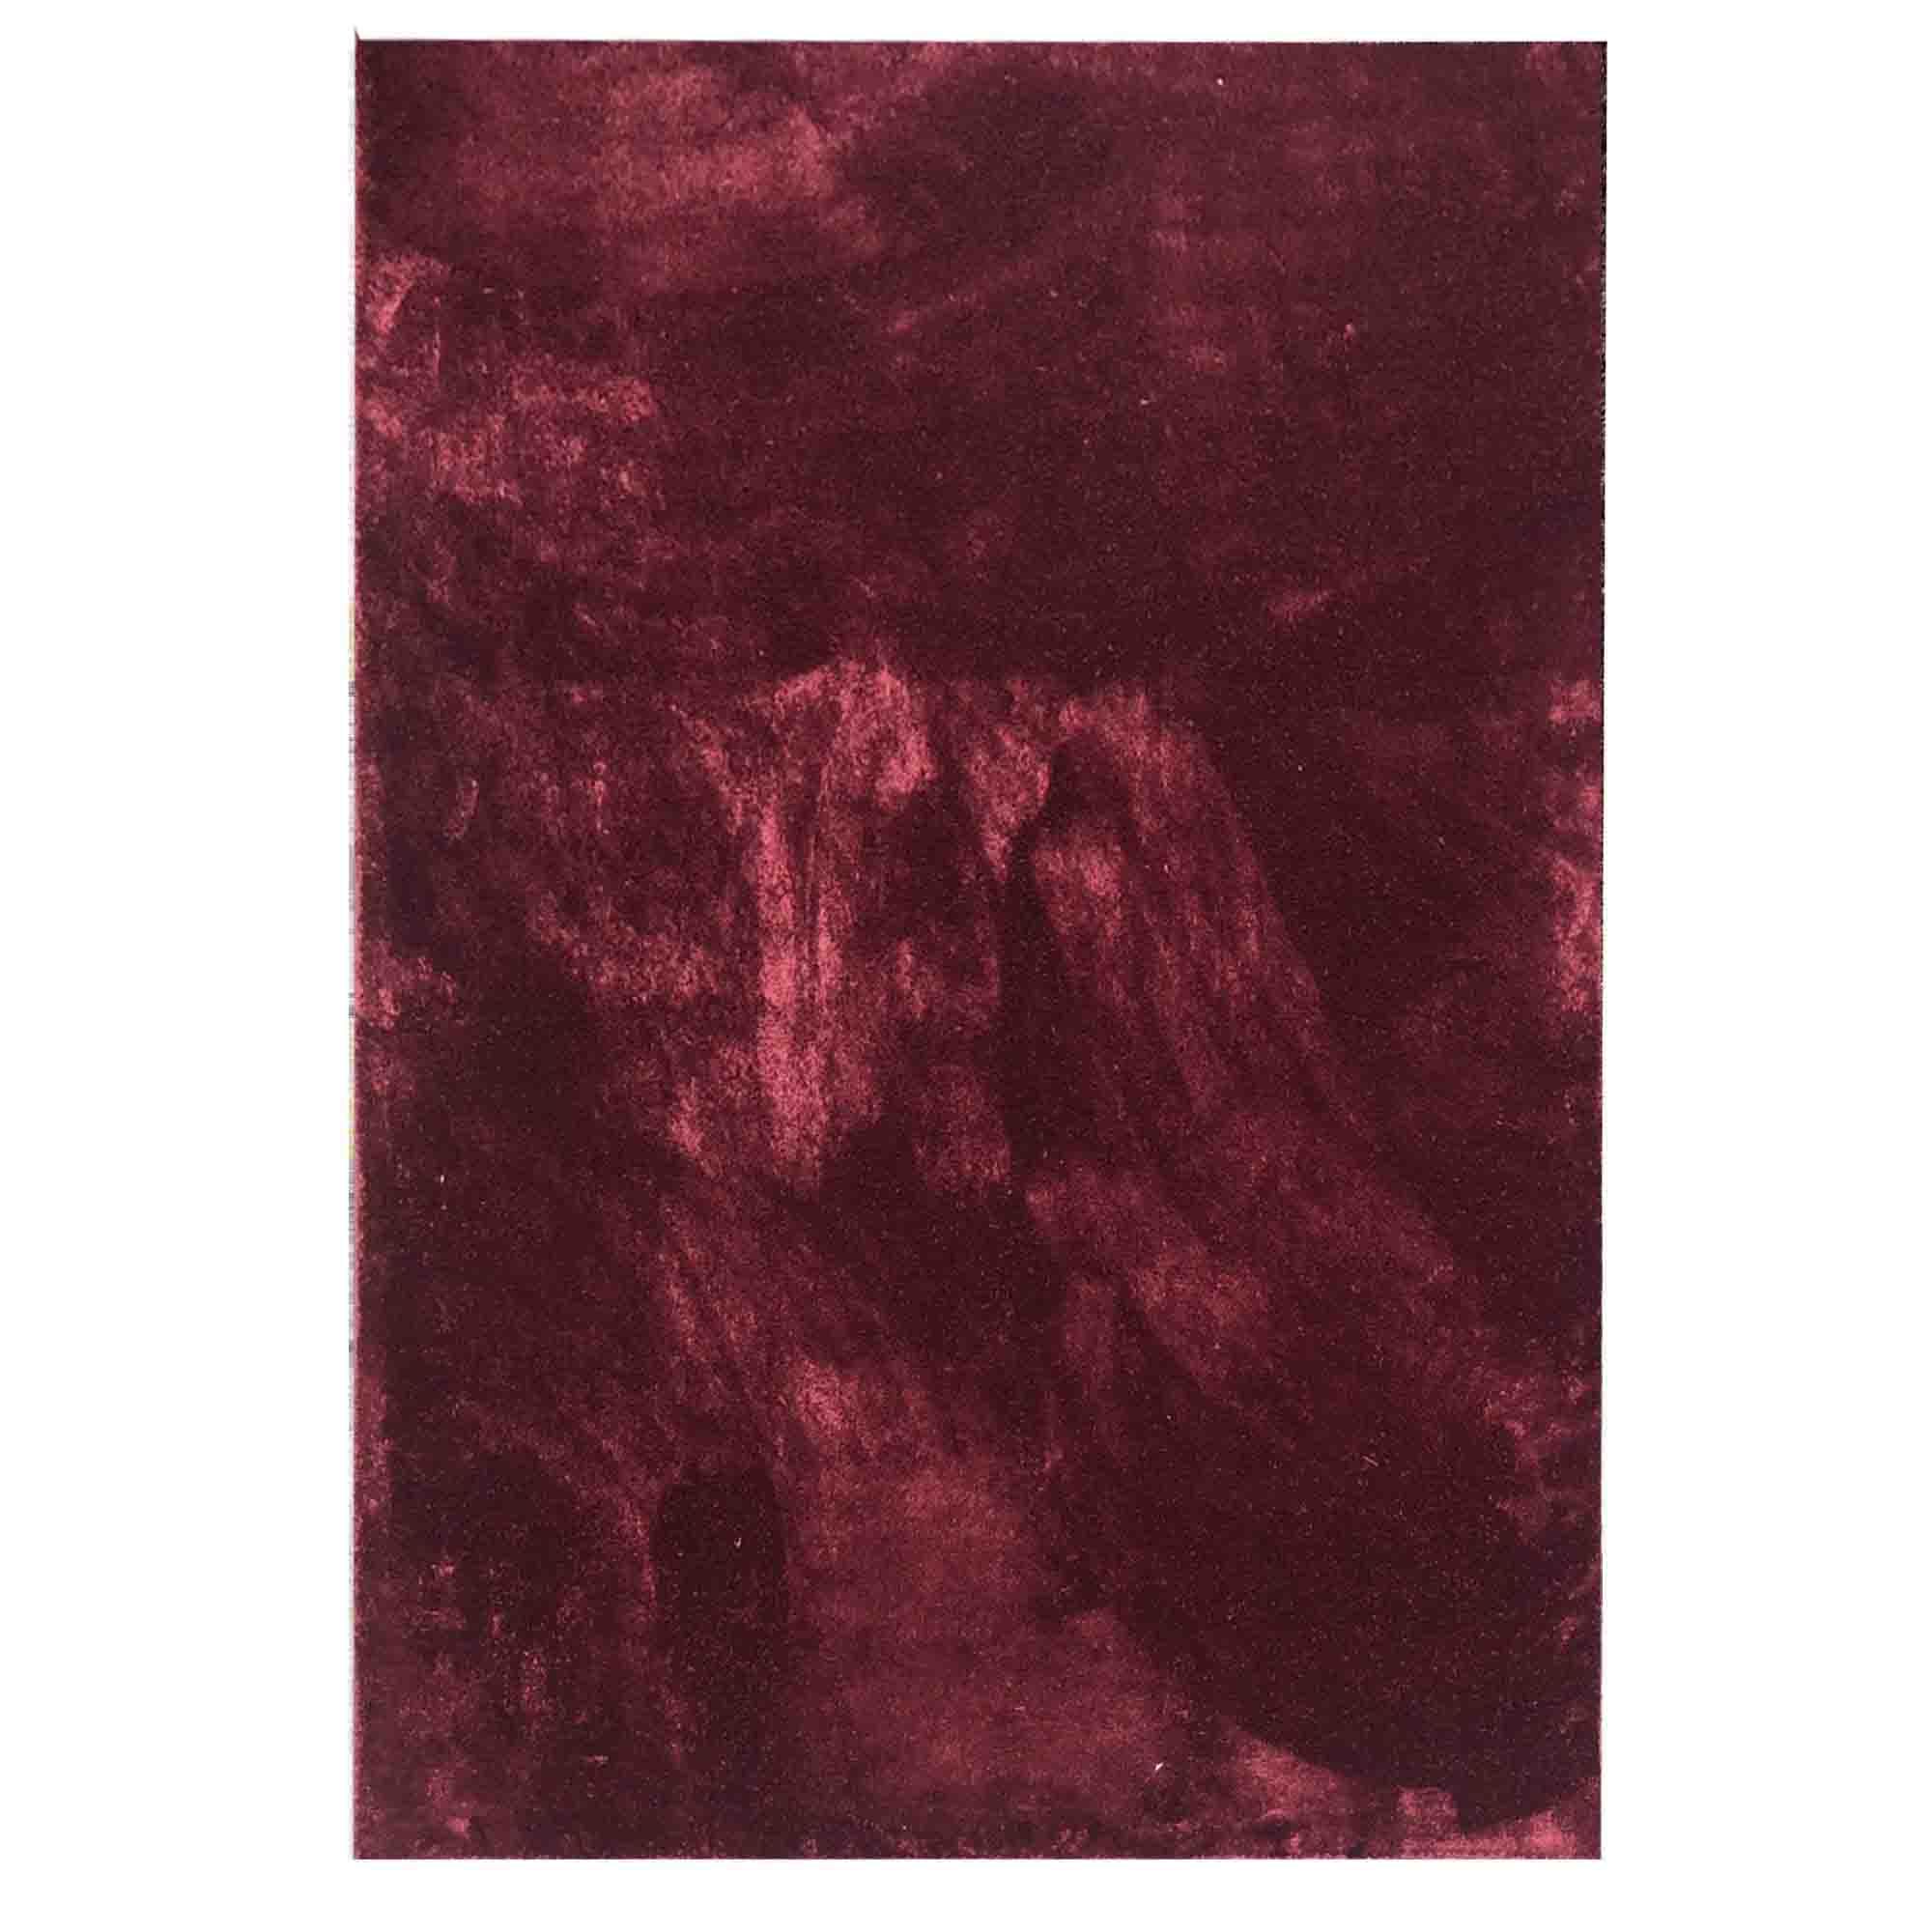  Thảm lót phòng khách màu đỏ Lamsa 1229 